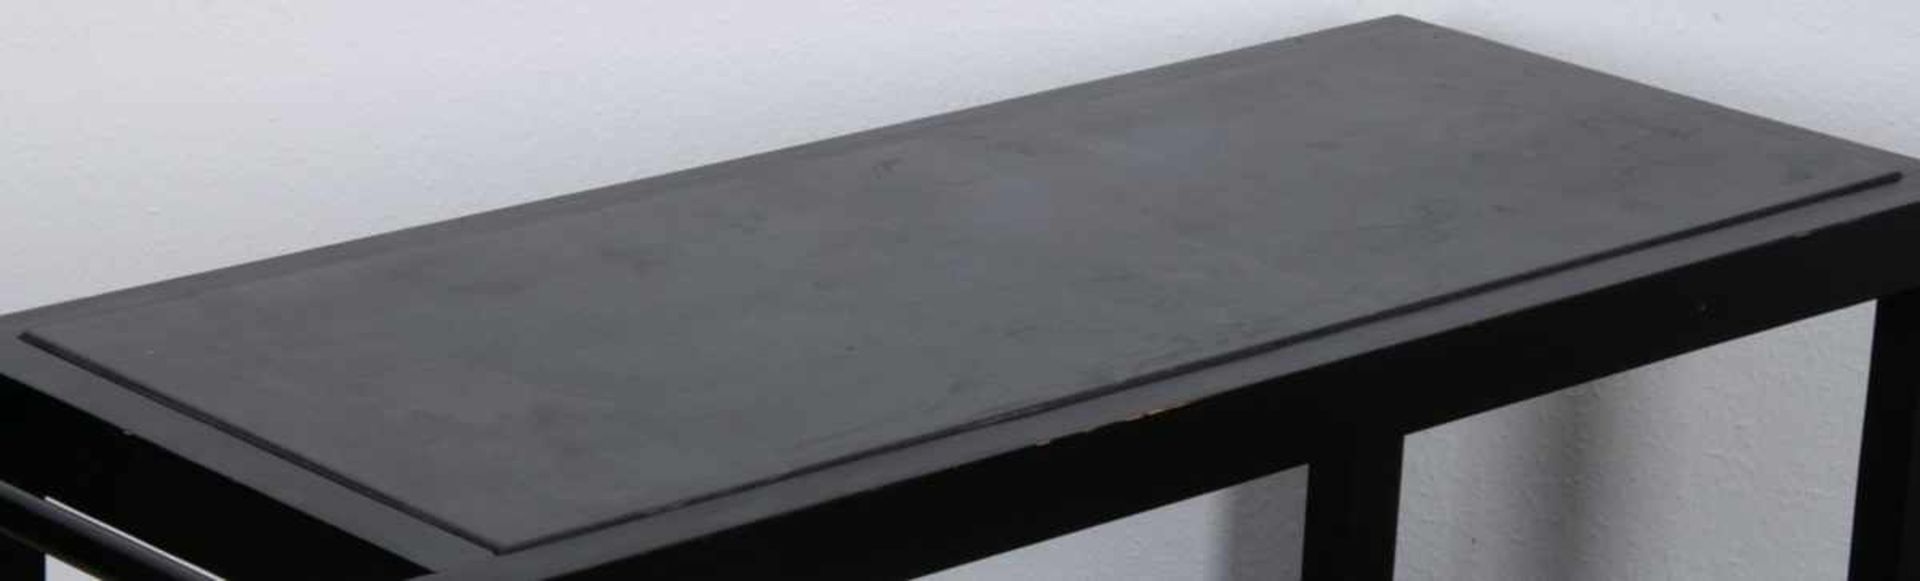 Rollbarer Gartentisch, schwarz lackiertes Nadelholz auf Kunststoffrollen gelagert/bedingt beweglich, - Bild 3 aus 6